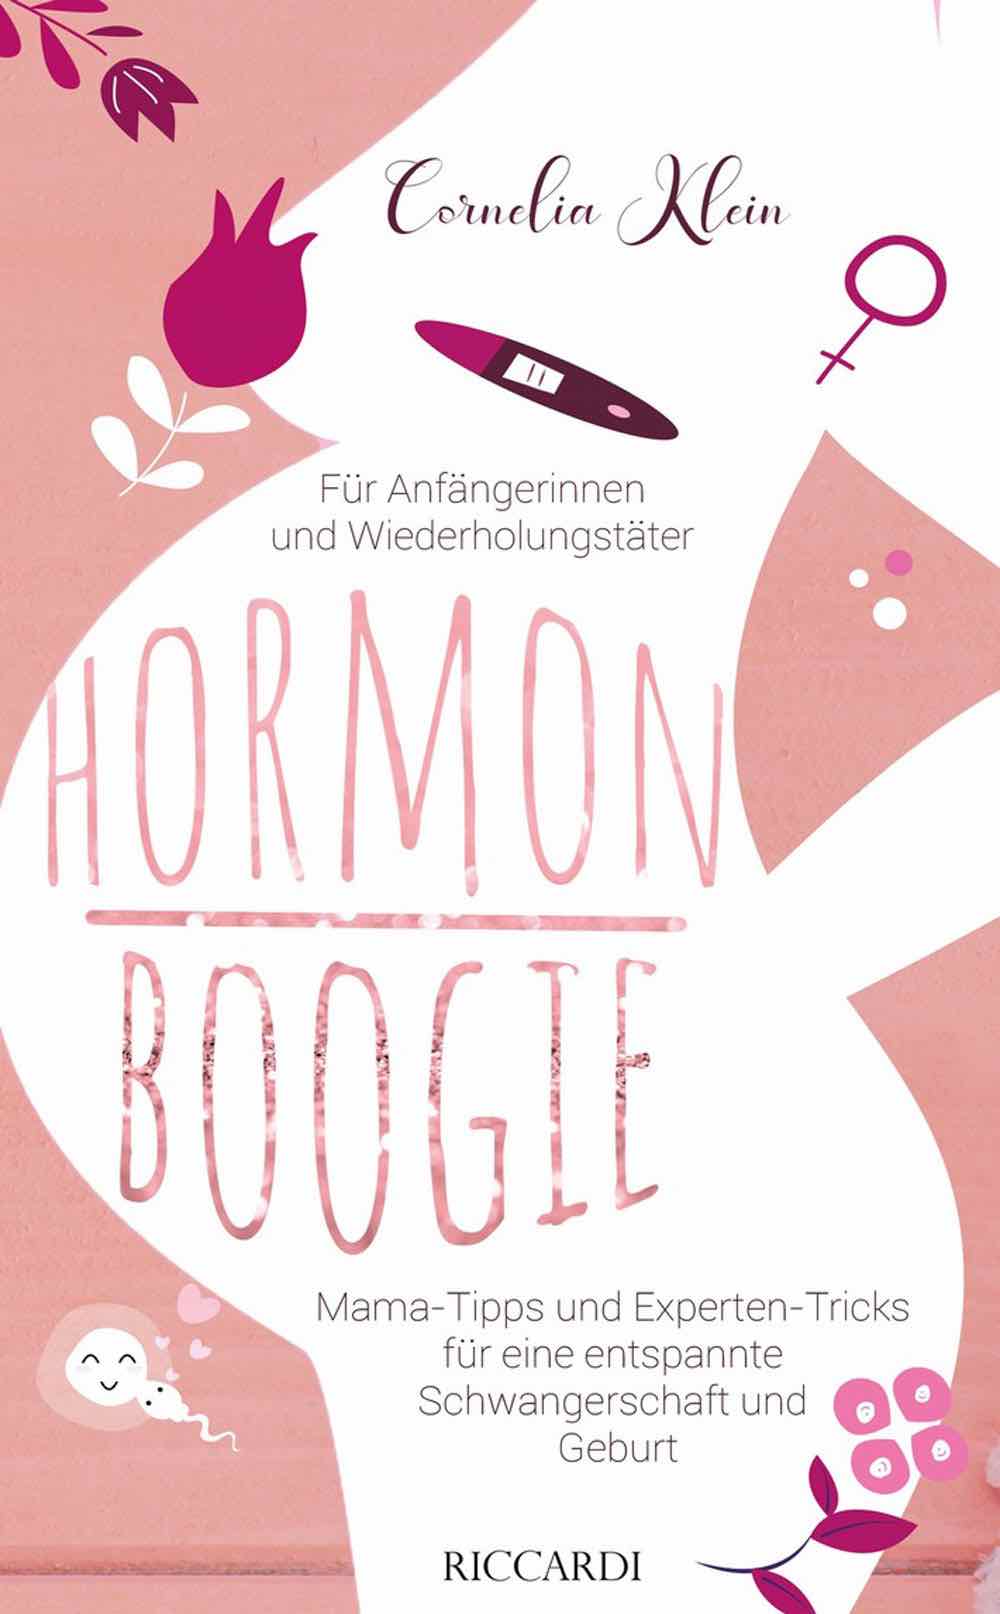 Hormon Boogie. Mama Tipps und Experten Tricks für eine entspannte Schwangerschaft und Geburt